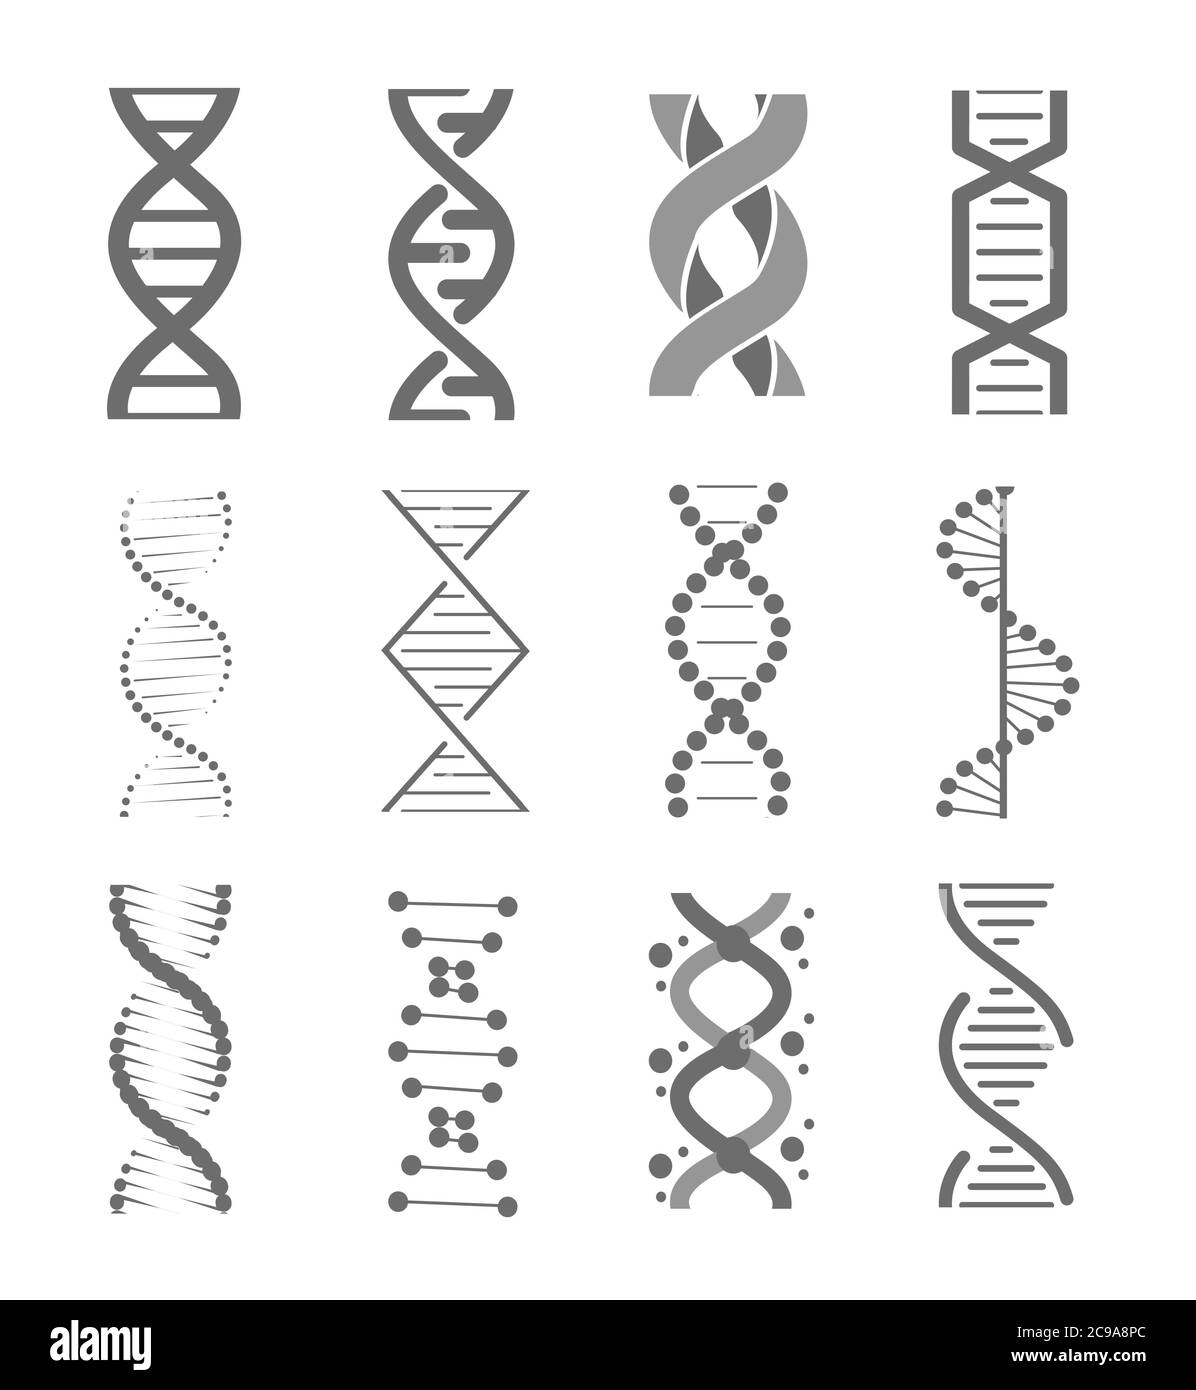 Simboli della tecnologia di ricerca del dna umano. Struttura ad elica, modello genomico e codice genetico umano. Insieme di illustrazioni vettoriali isolate Illustrazione Vettoriale